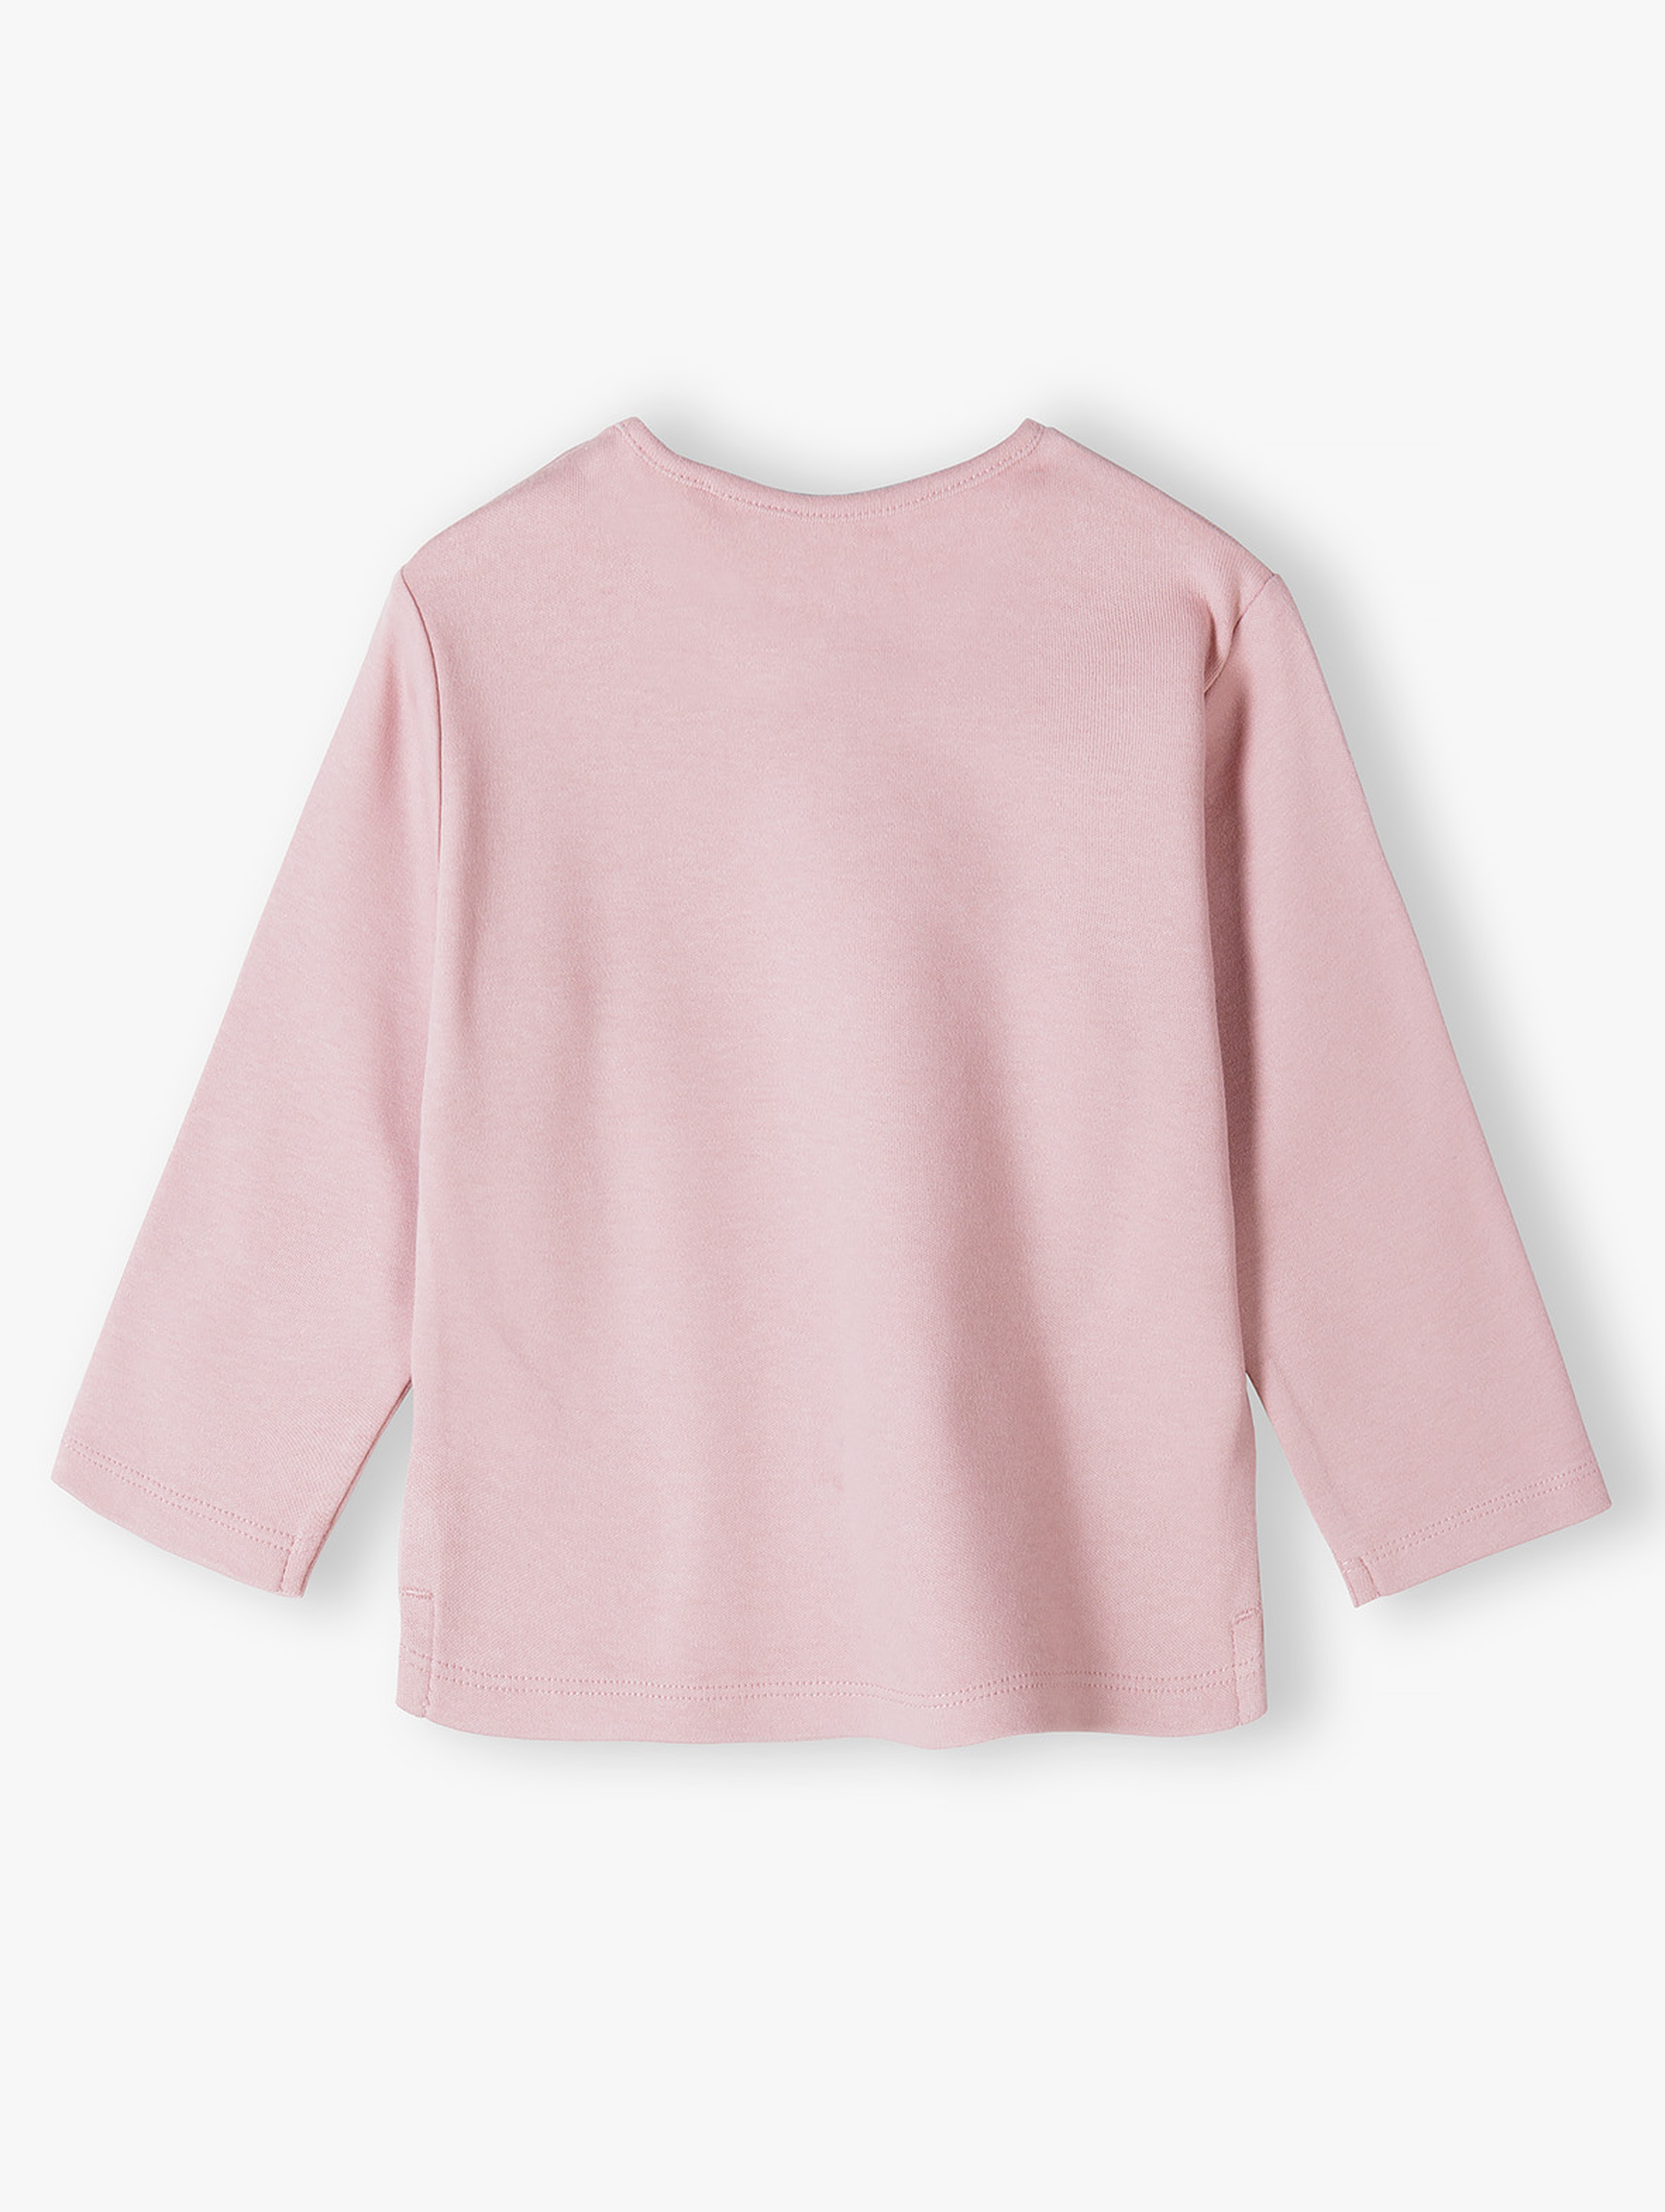 Różowa bawełniana bluzka niemowlęca - długi rękaw 5.10.15.